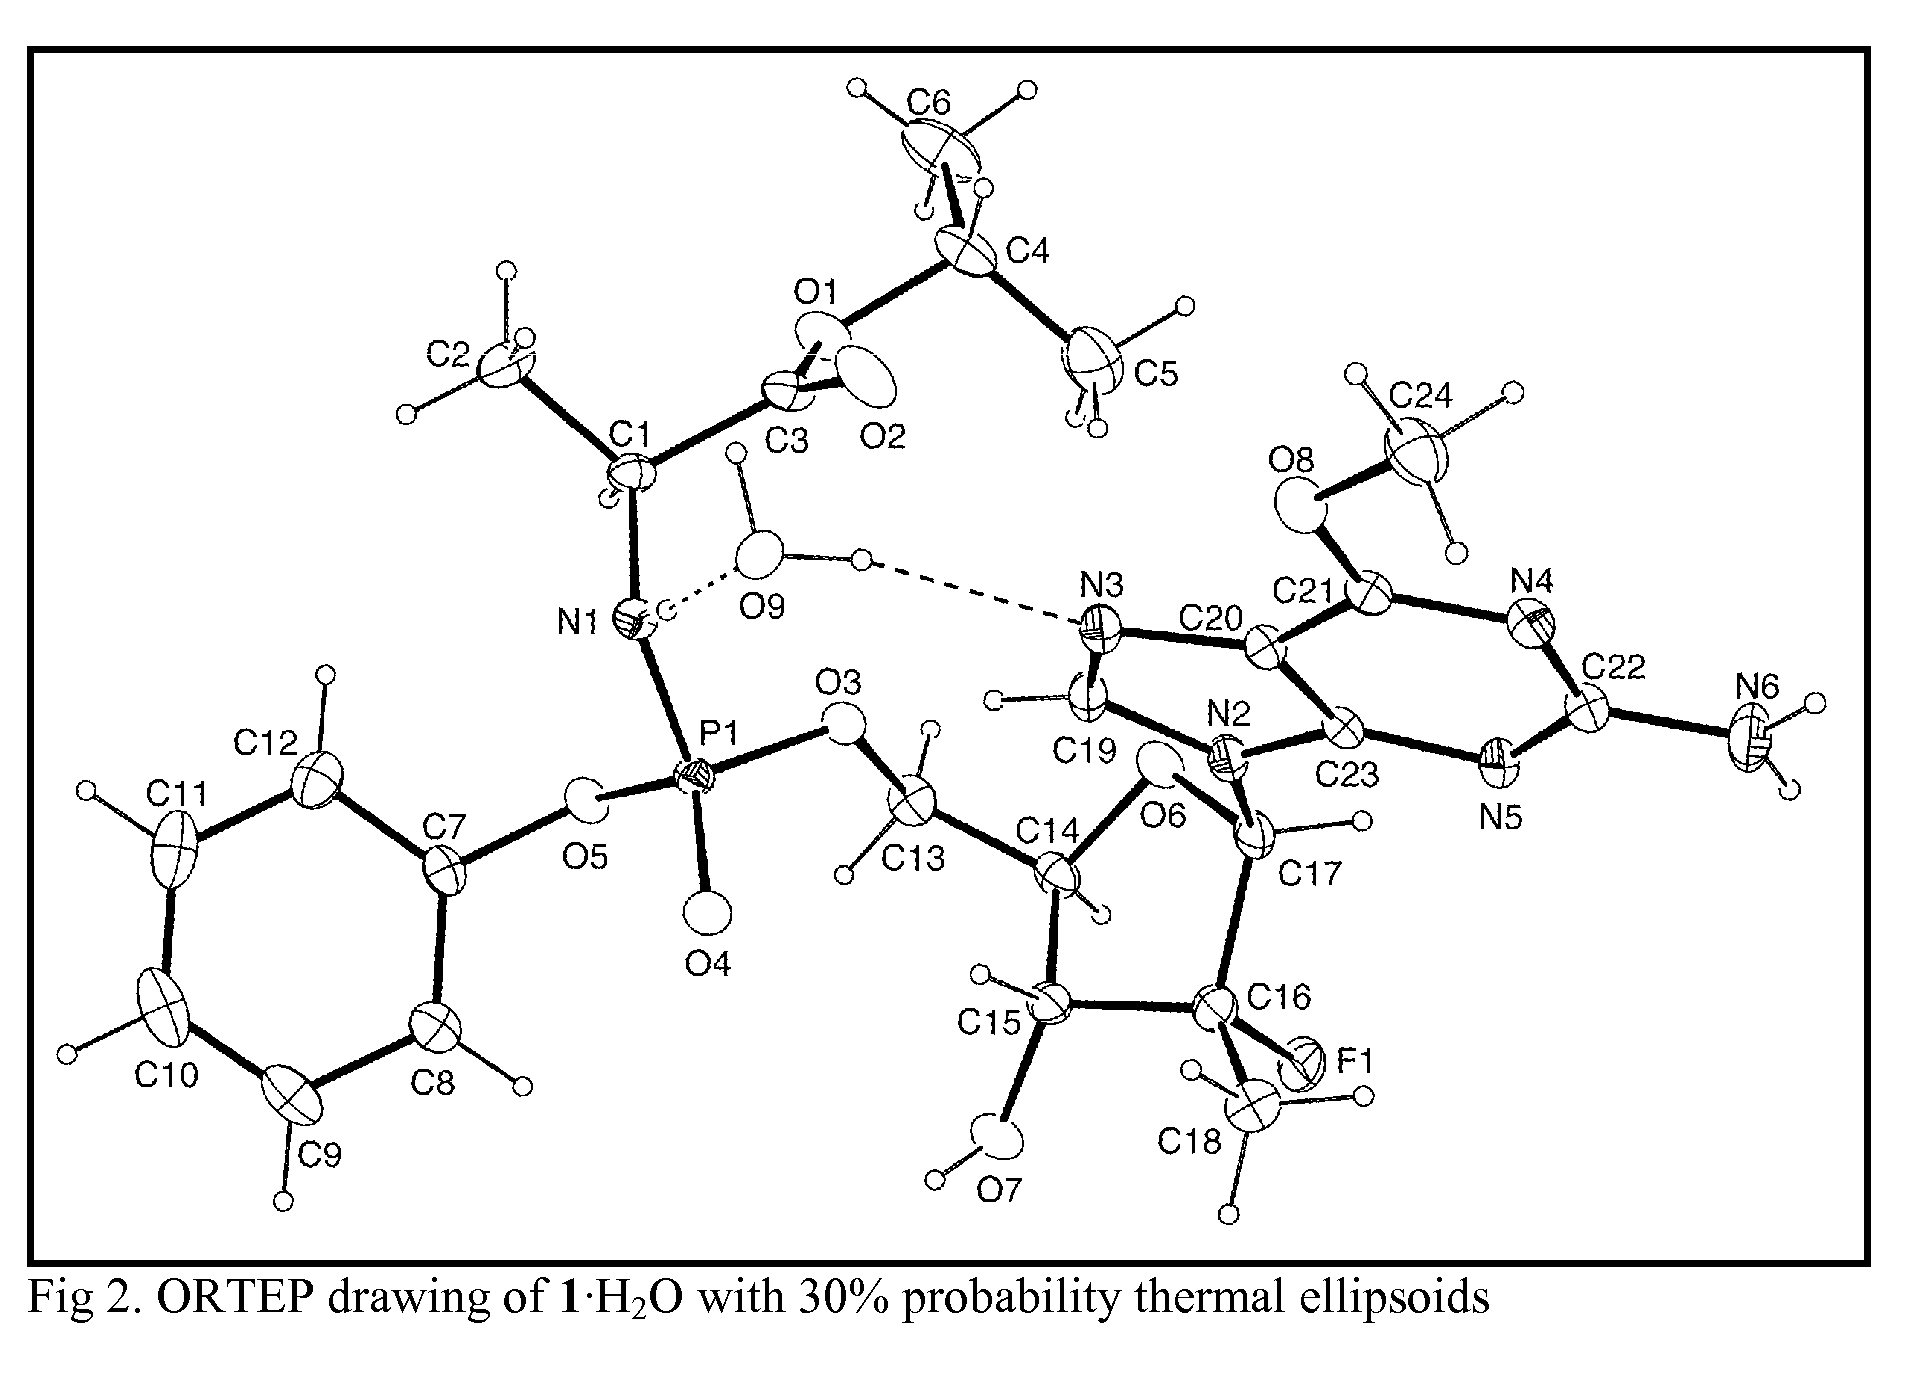 Purine nucleoside phosphoramidate